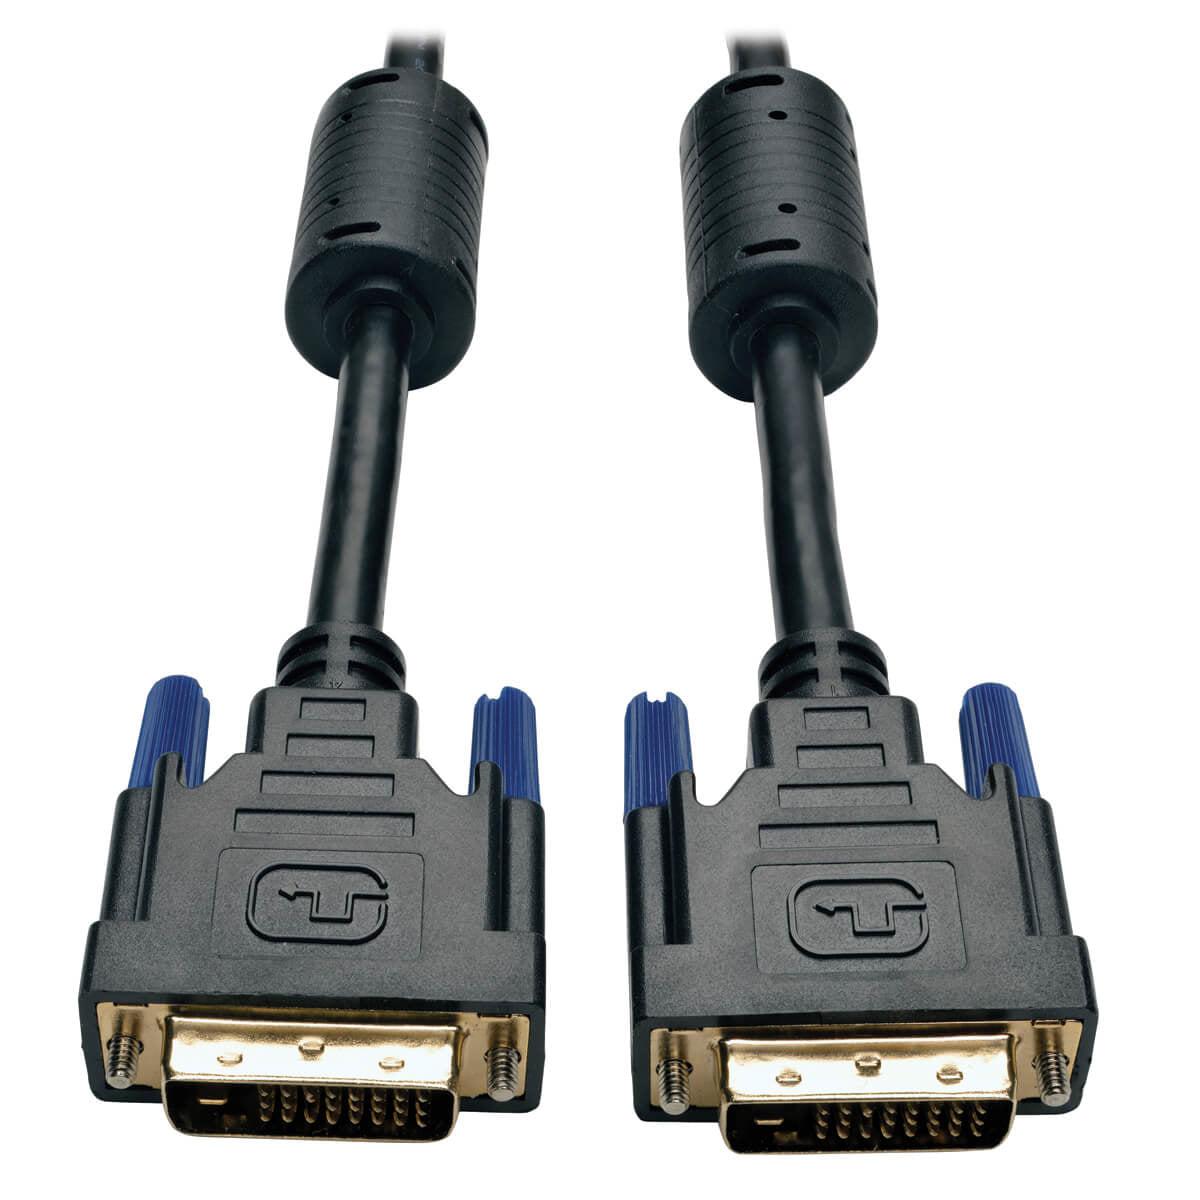 Tripp Lite P560-030 Dvi Dual Link Cable, Digital Tmds Monitor Cable (Dvi-D M/M), 30 Ft. (9.14 M)